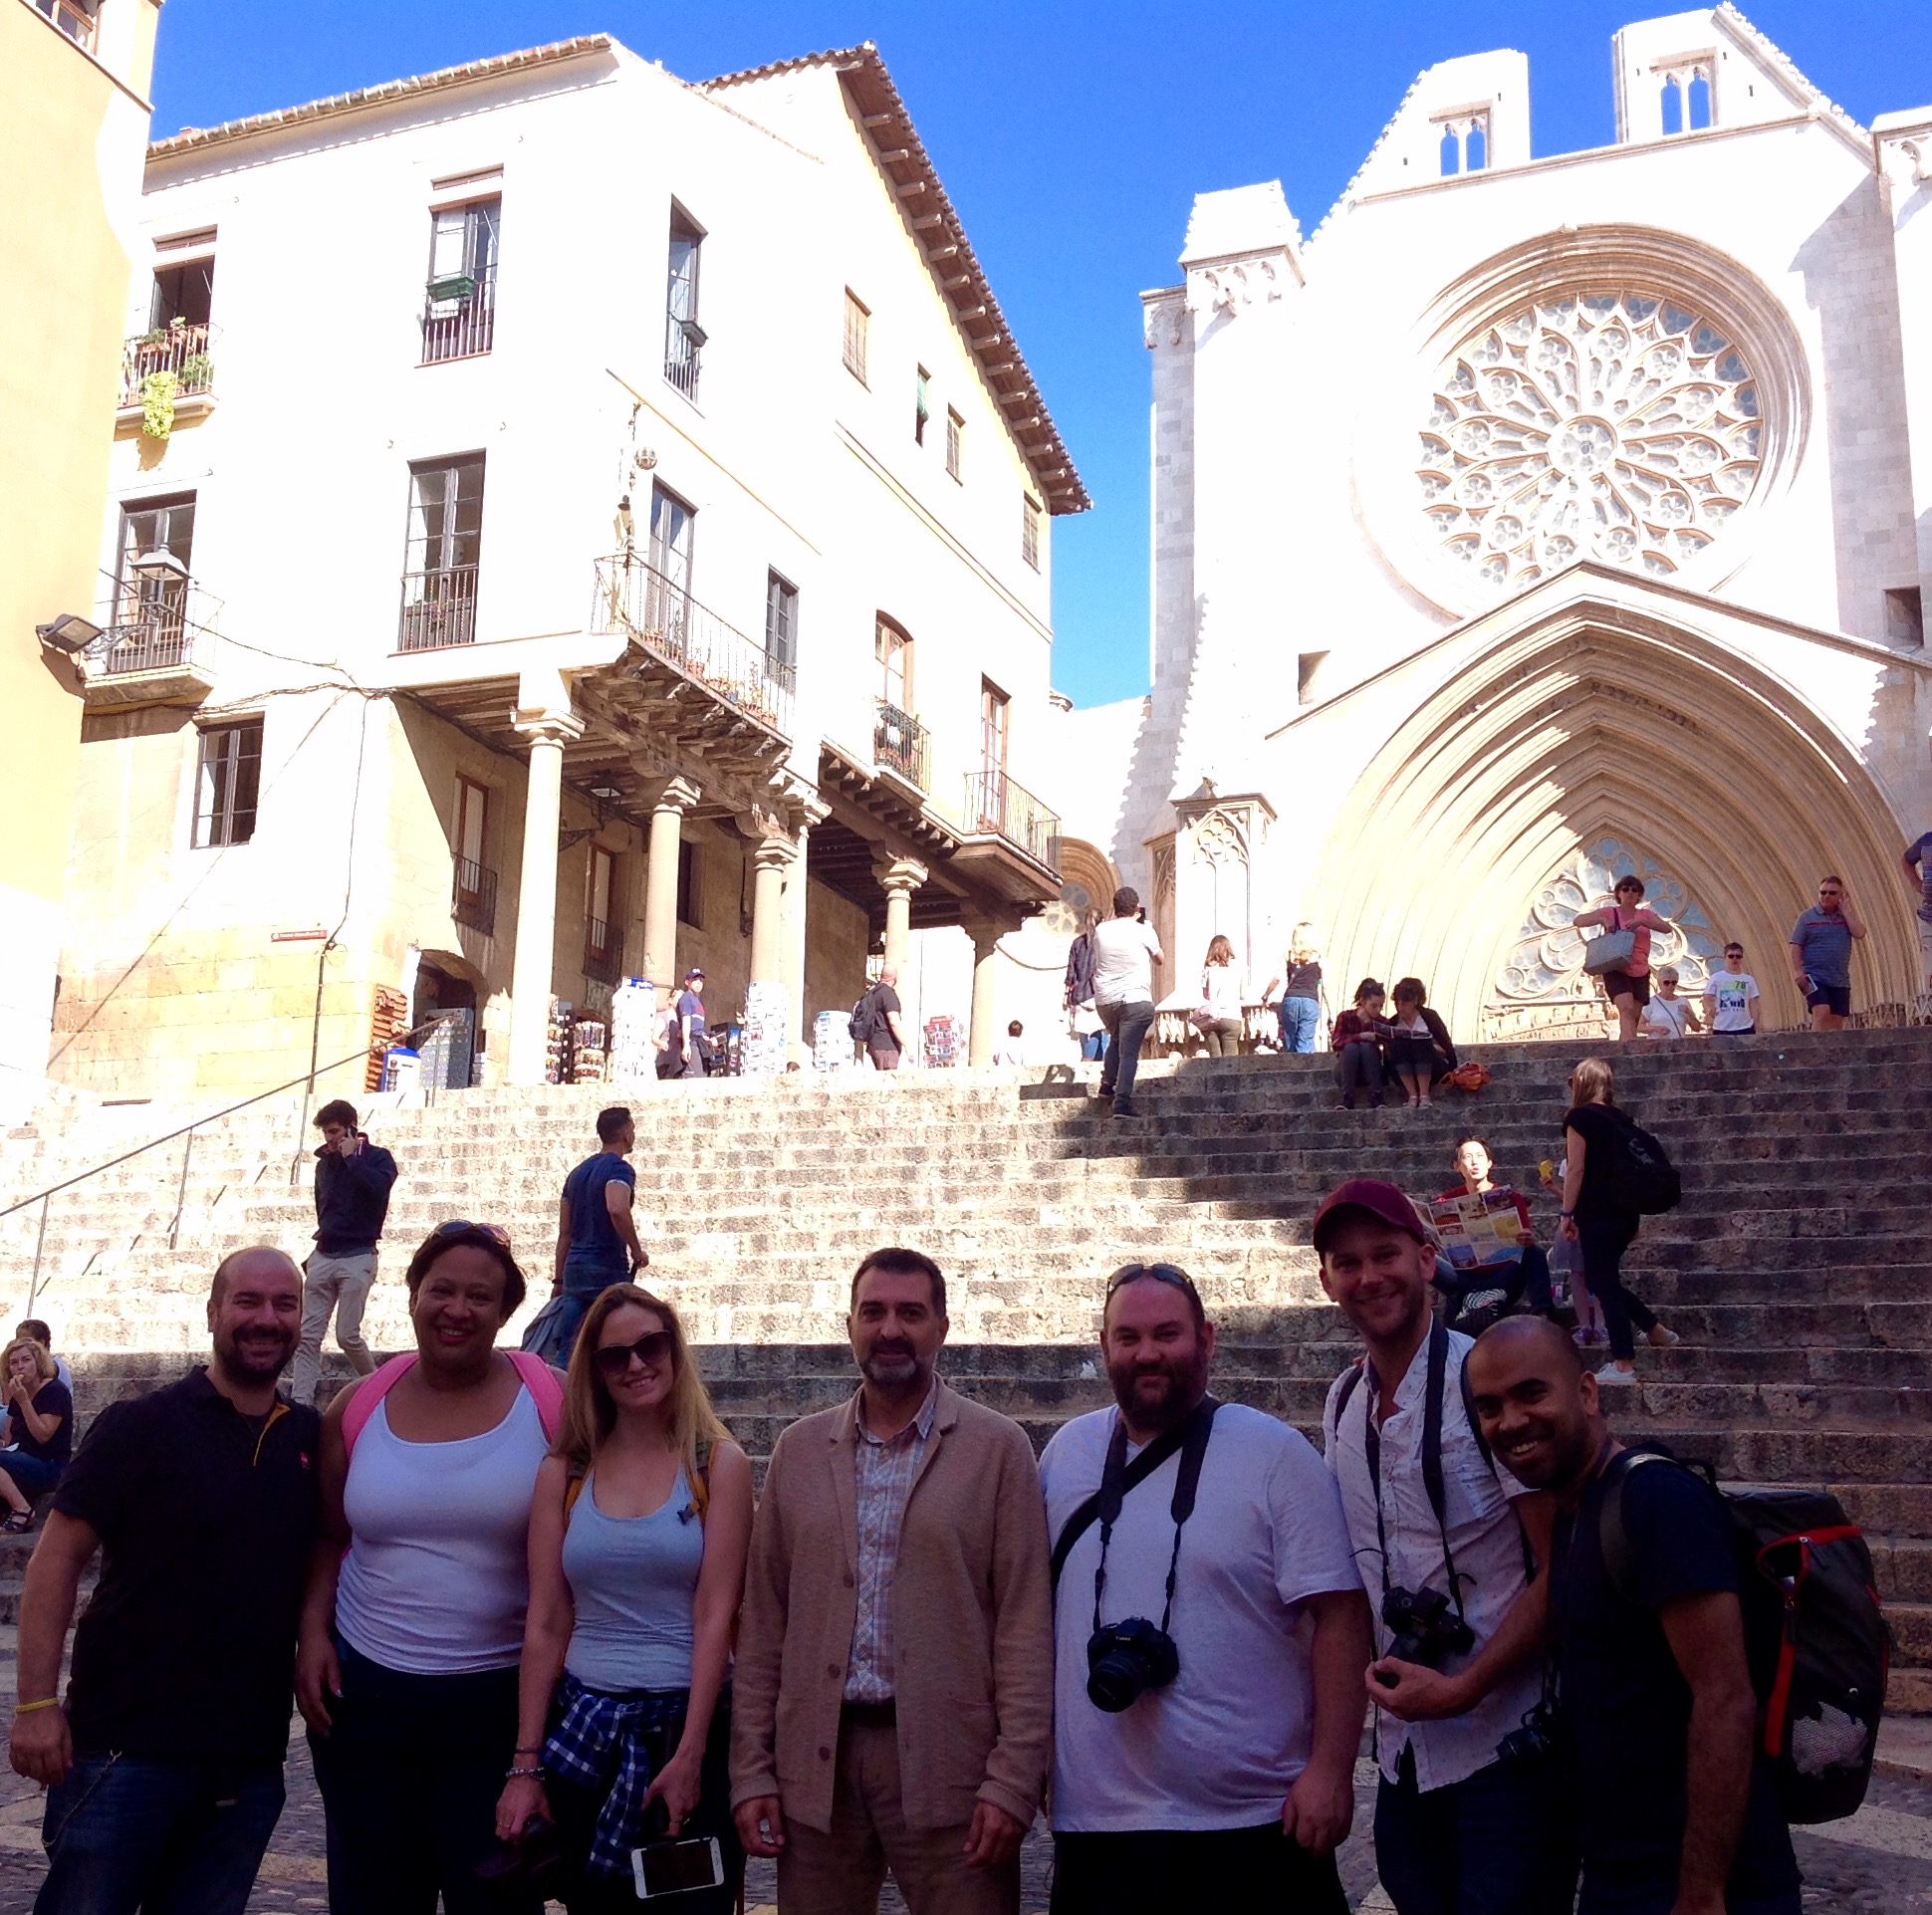 La Red de Ciudades Ave organiza un Blog Trip con 5 blogueros británicos con el que promociona su alternativa para recorrer España